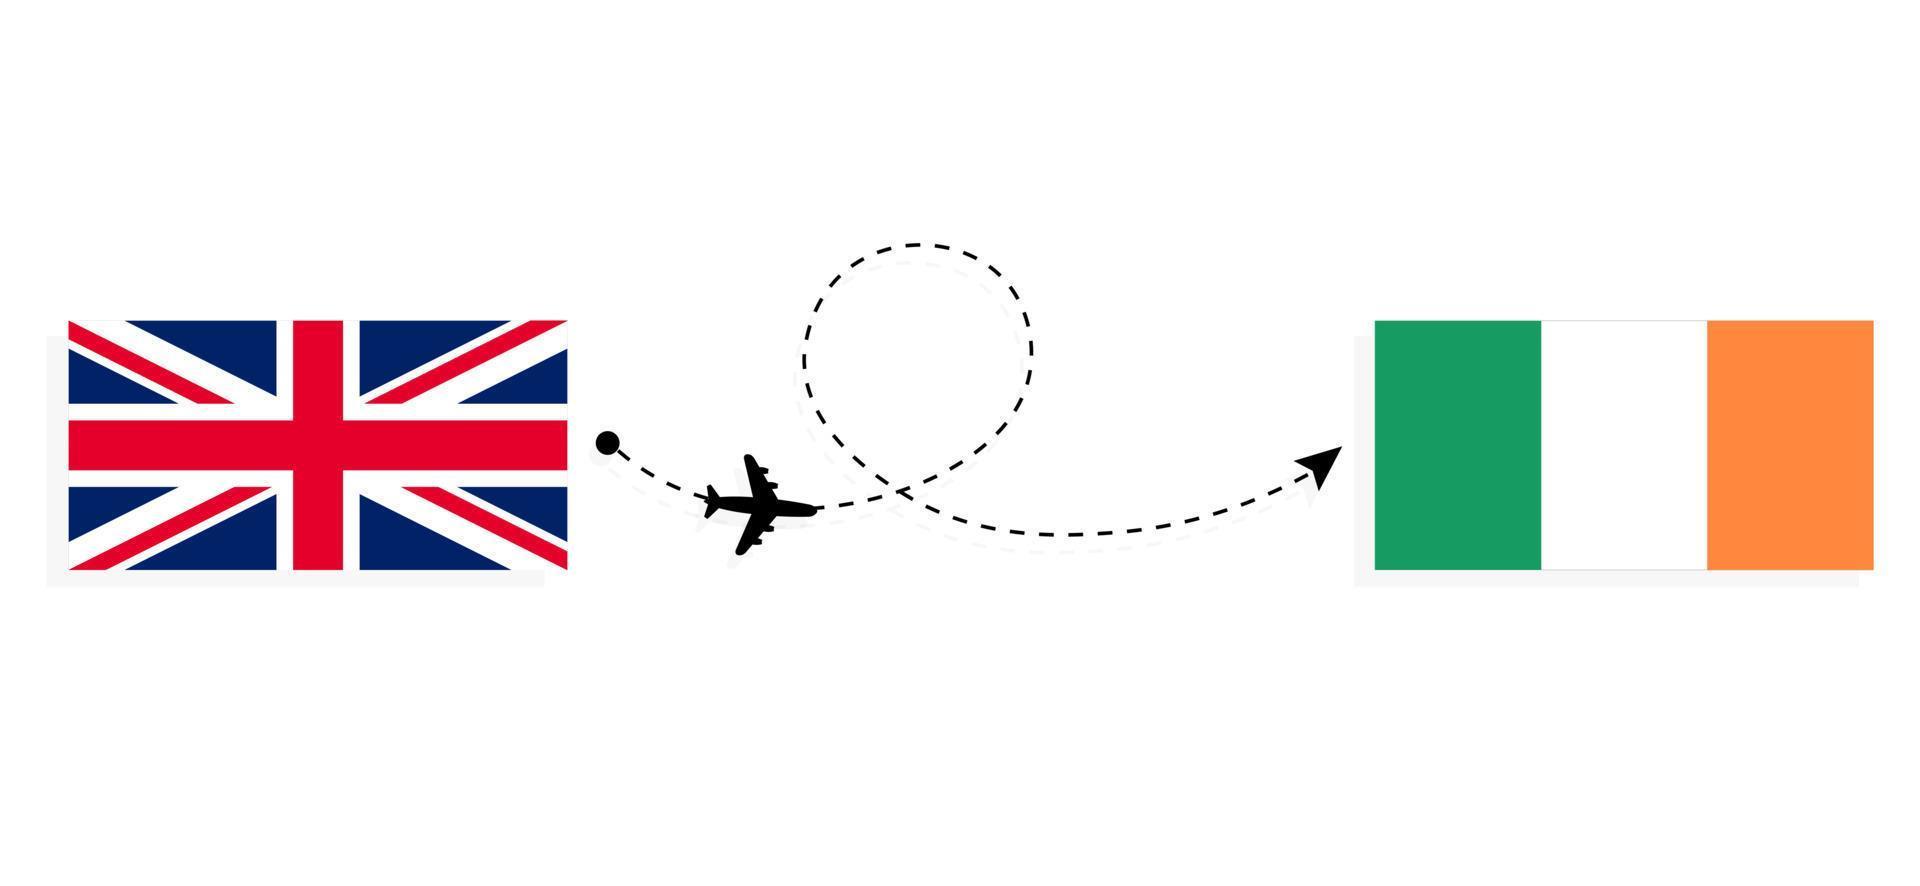 flyg och resor från Storbritannien till Irland med passagerarflygplan vektor